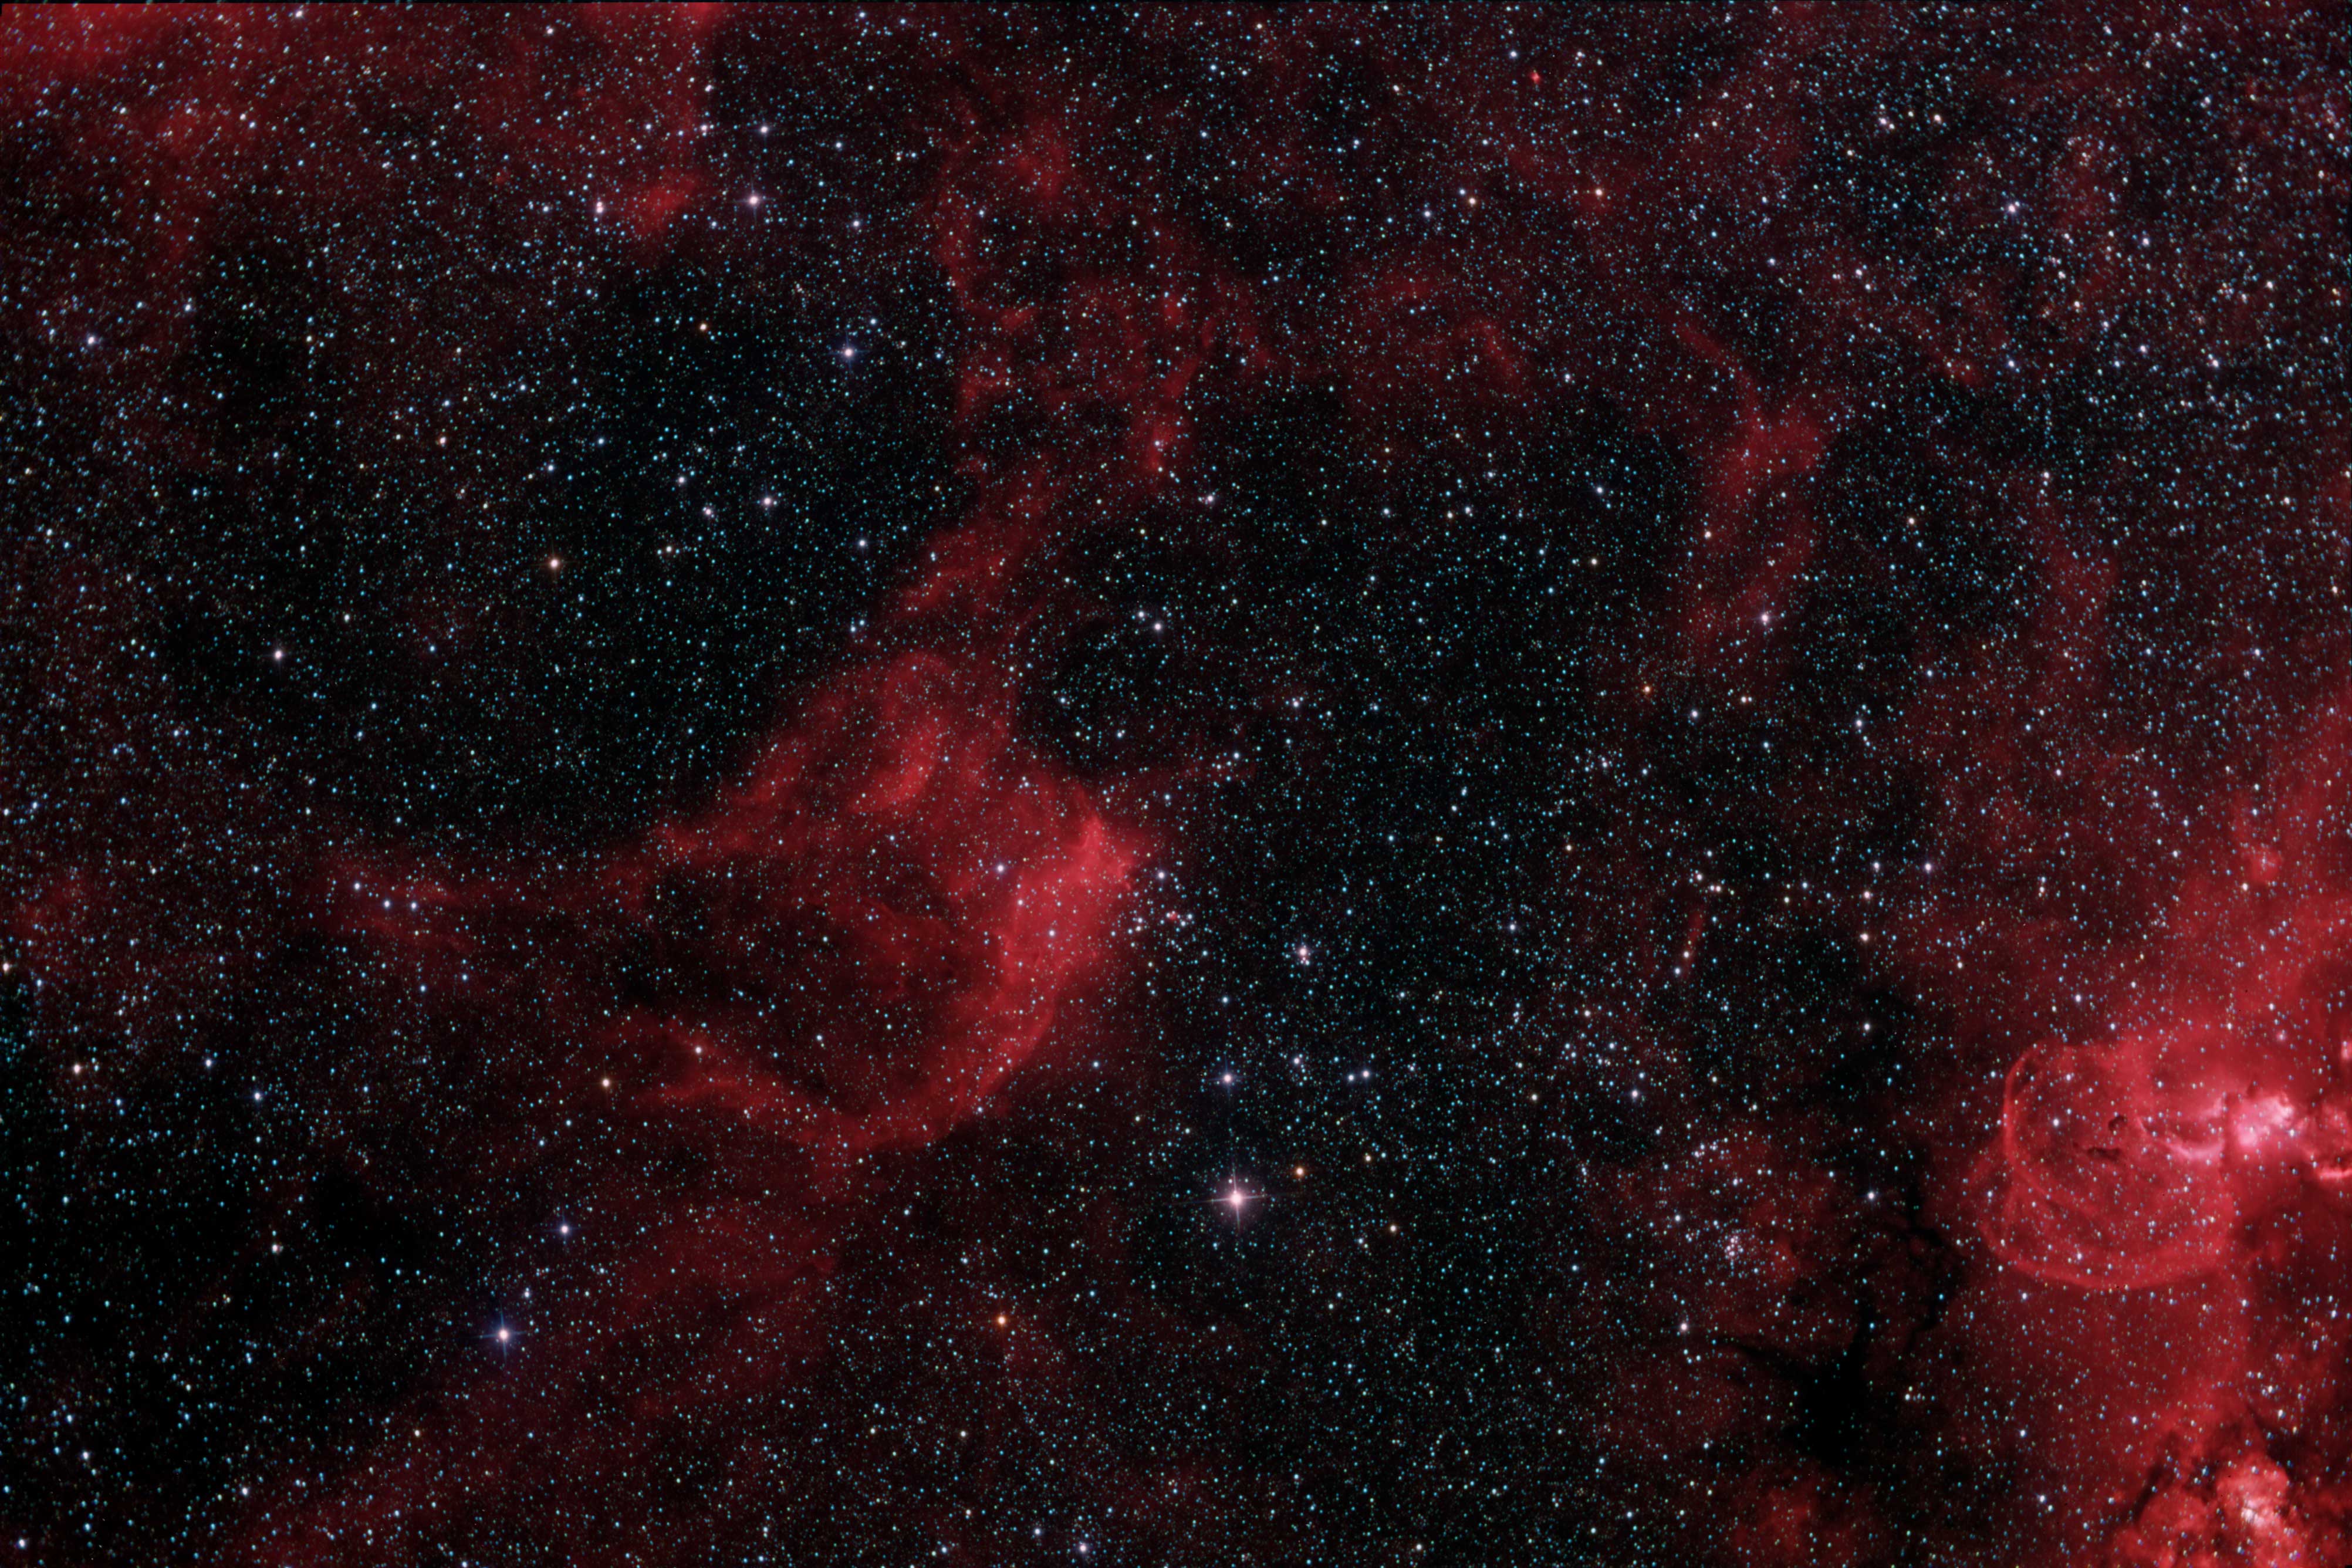 NGC 3572